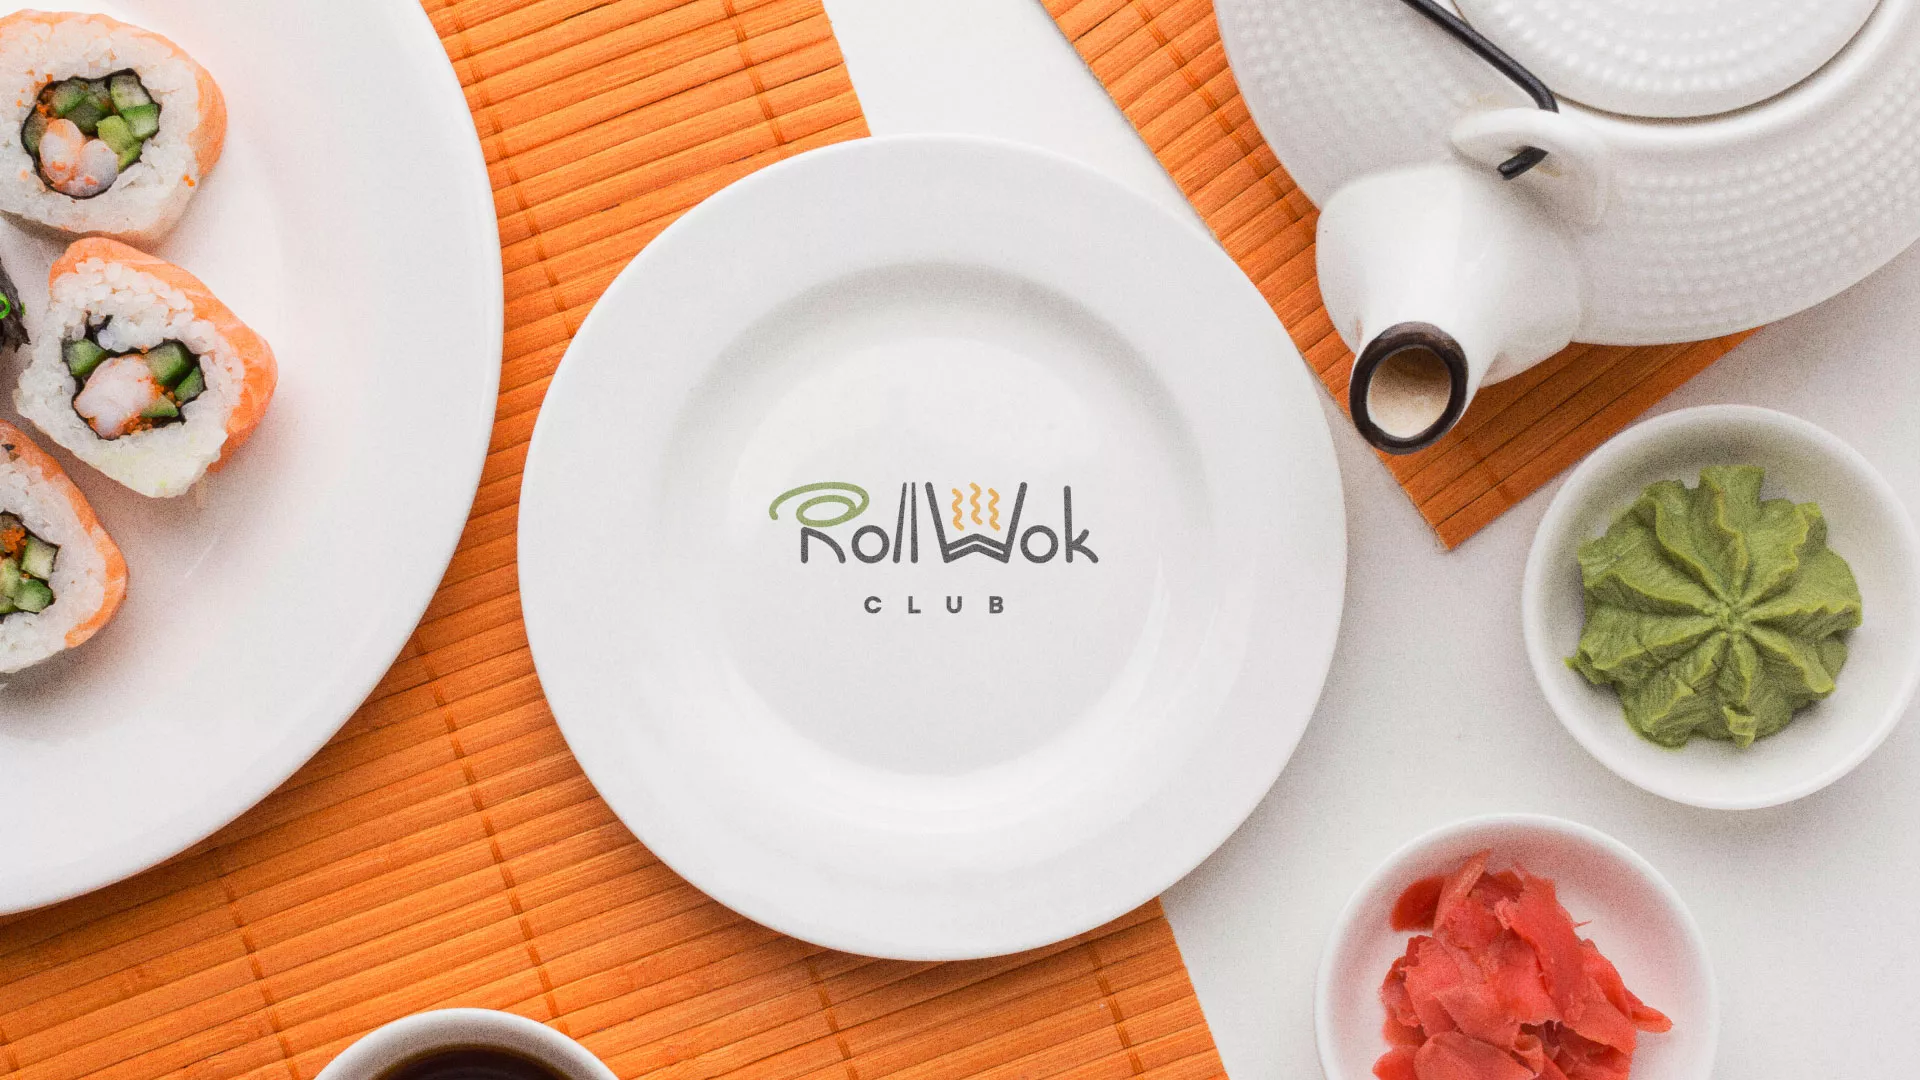 Разработка логотипа и фирменного стиля суши-бара «Roll Wok Club» в Болхове